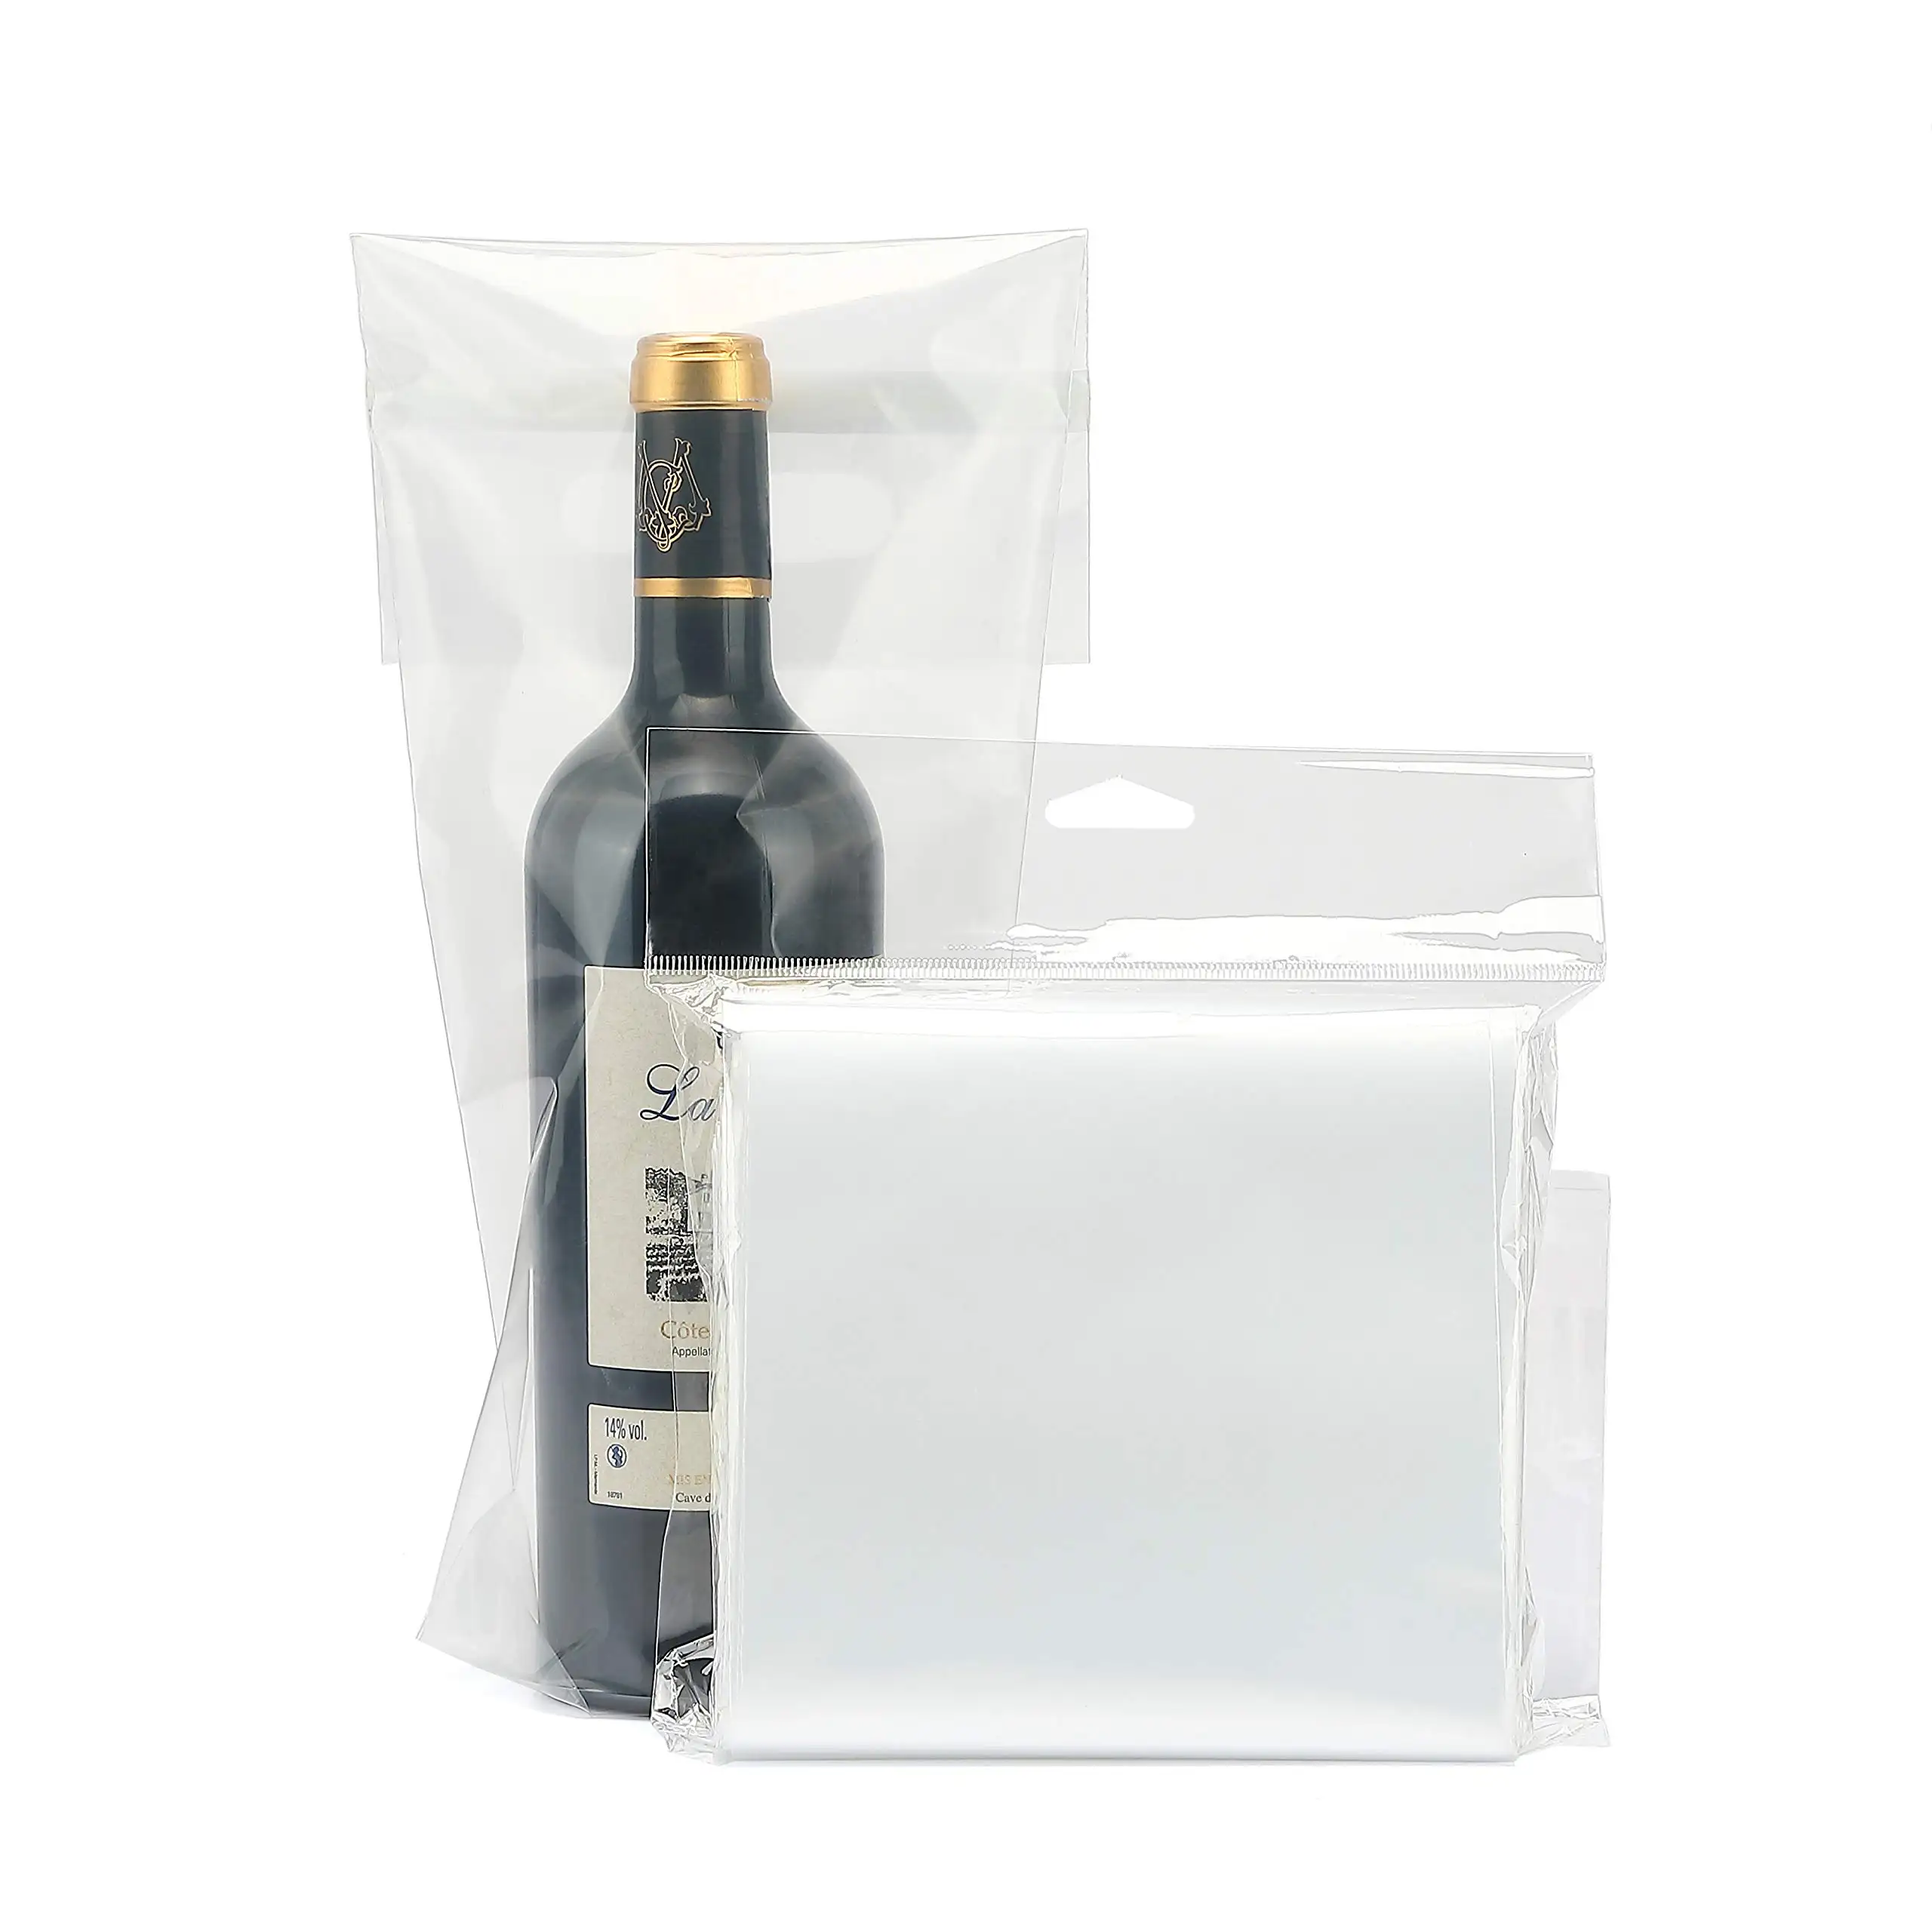 Bolsas de vino para cajas de botellas, asas resistentes y sello a prueba de manipulaciones